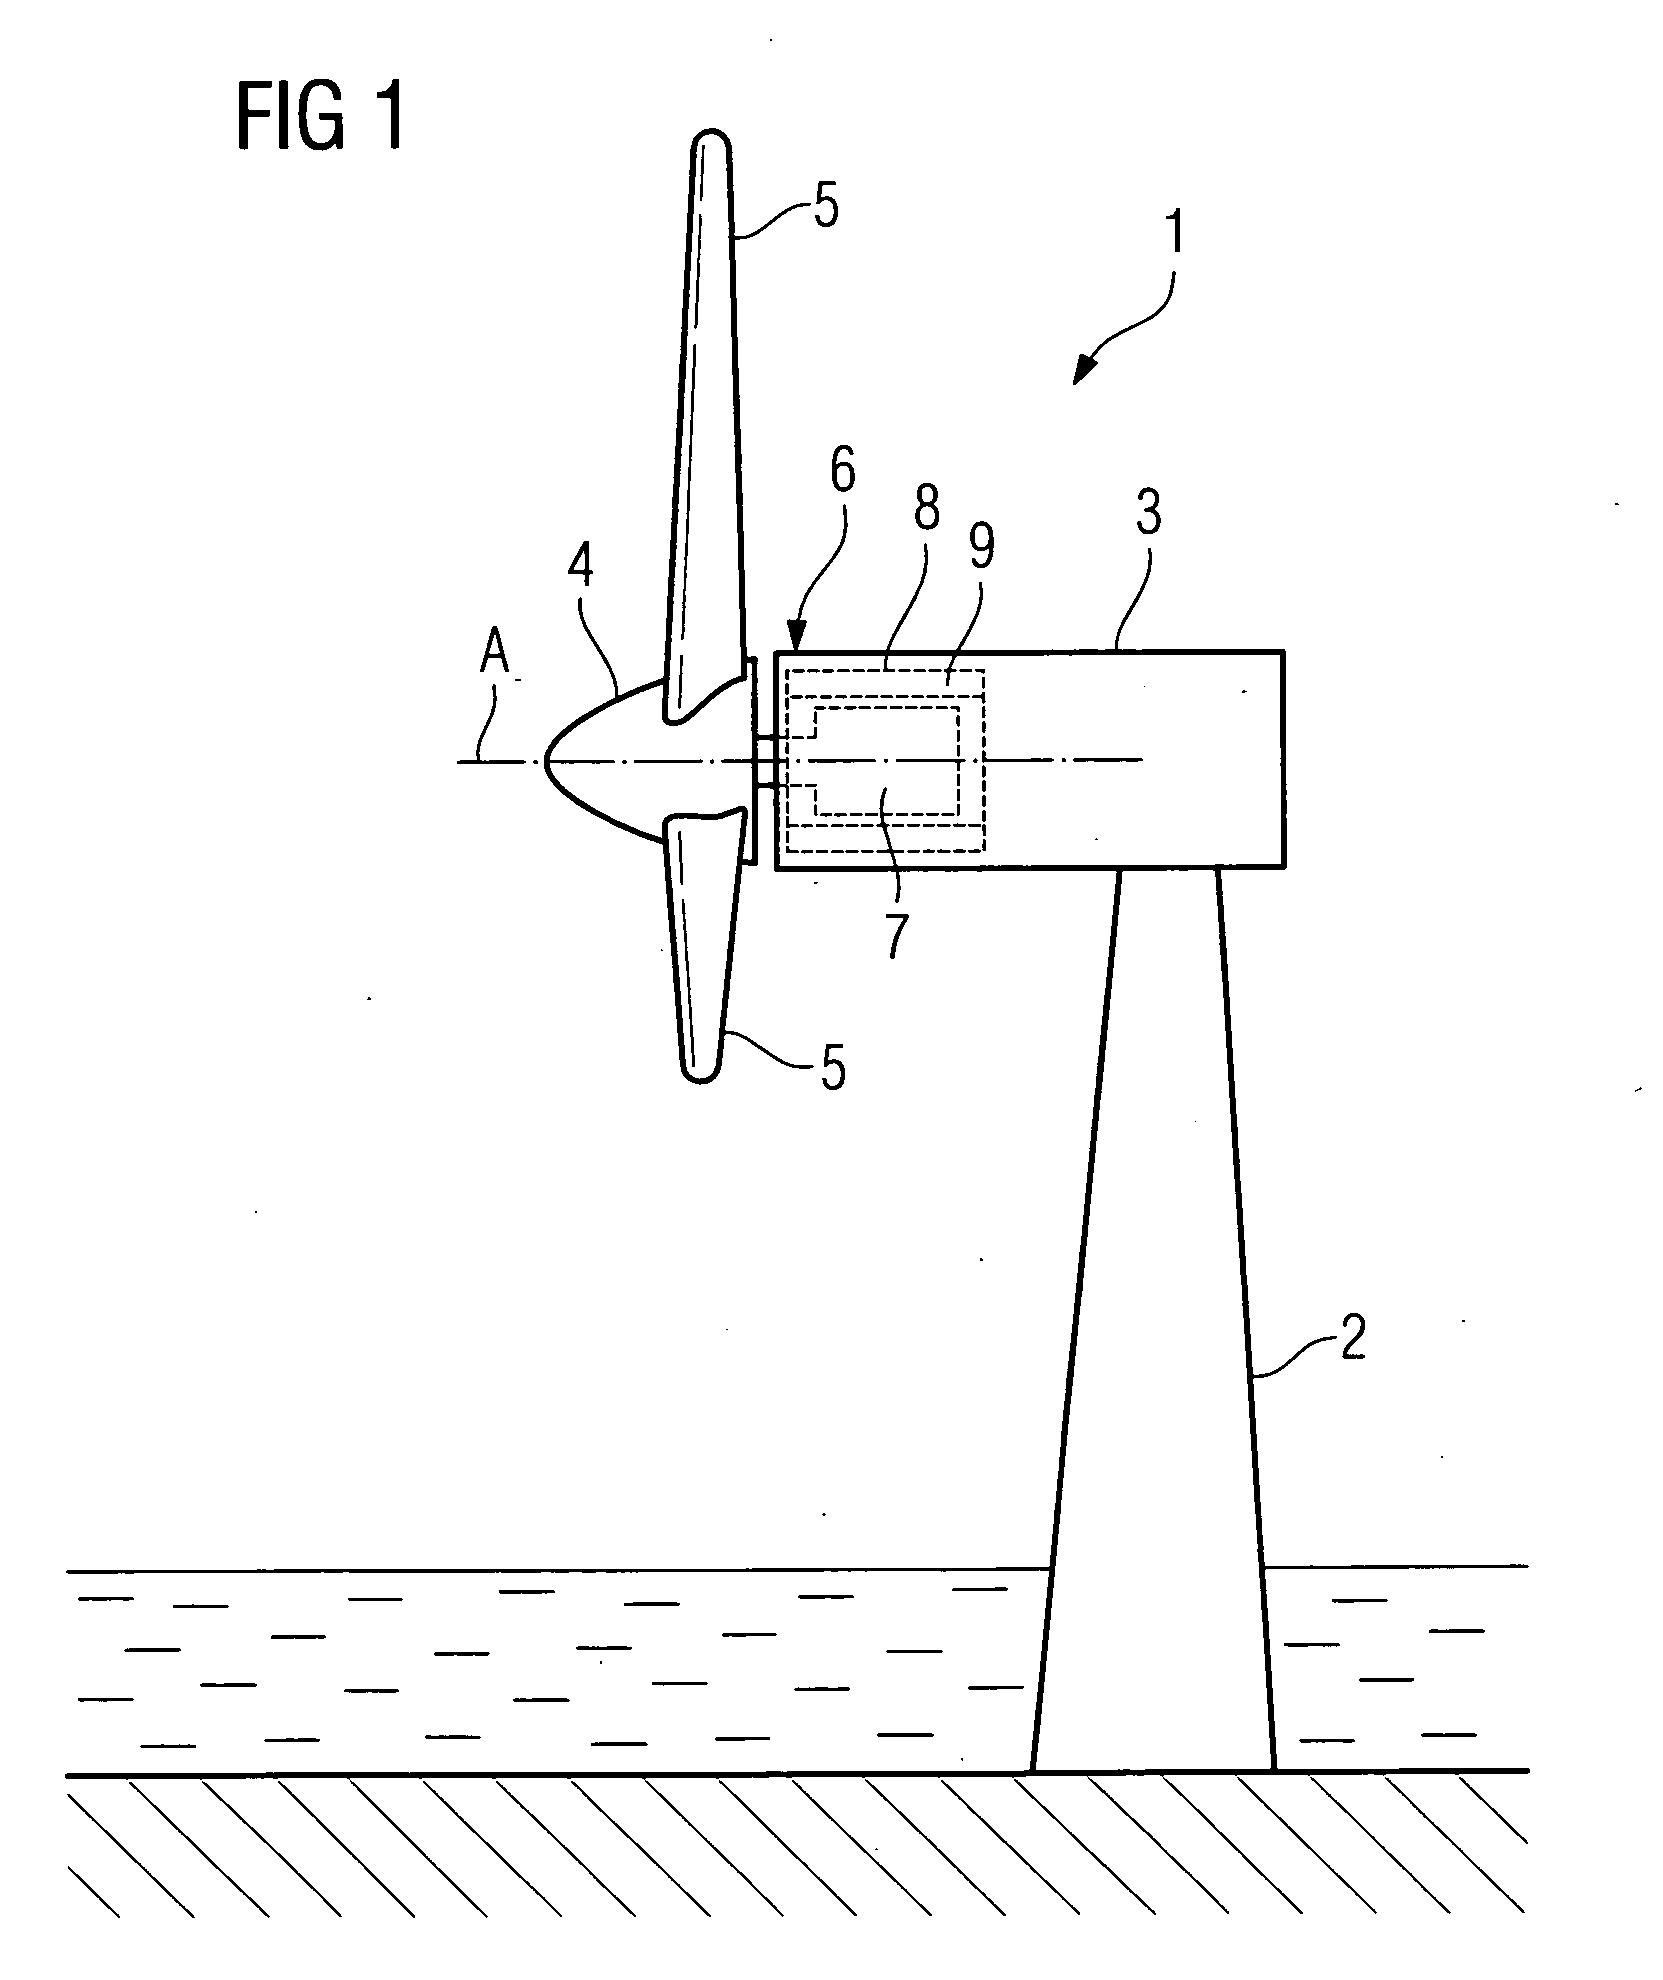 Stator arrangement, generator and wind turbine